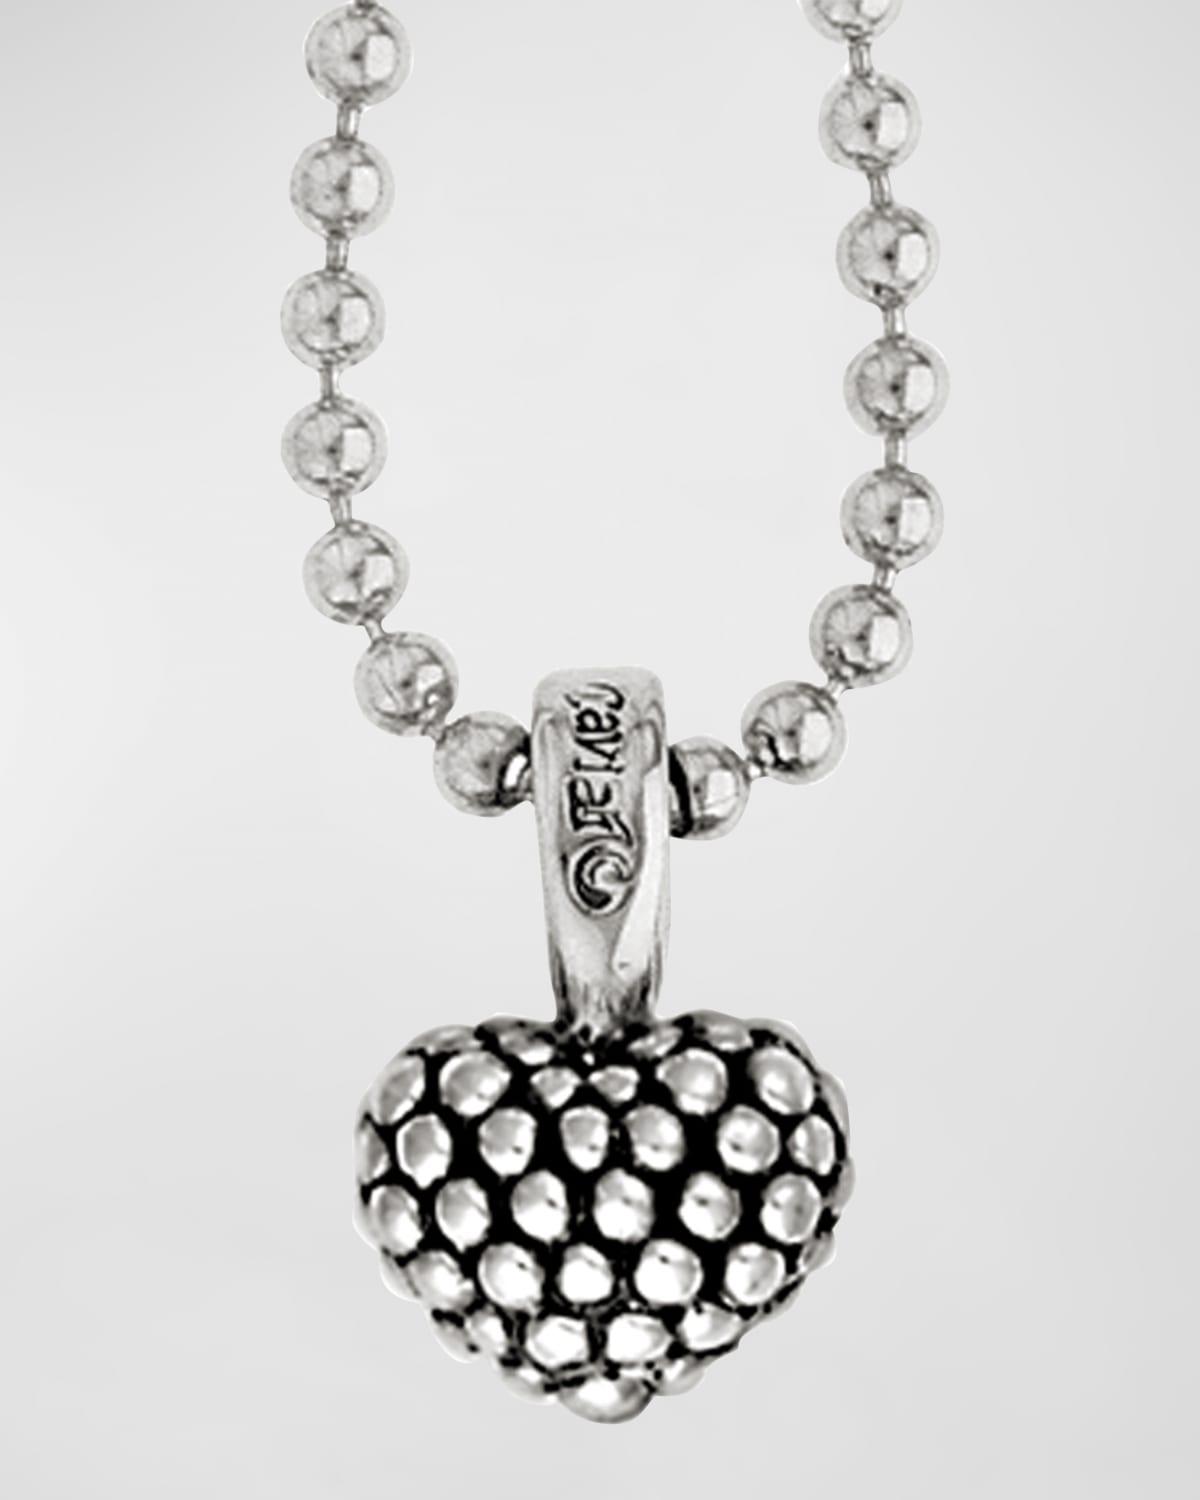 Caviar Beaded Heart Pendant Necklace, 35"L